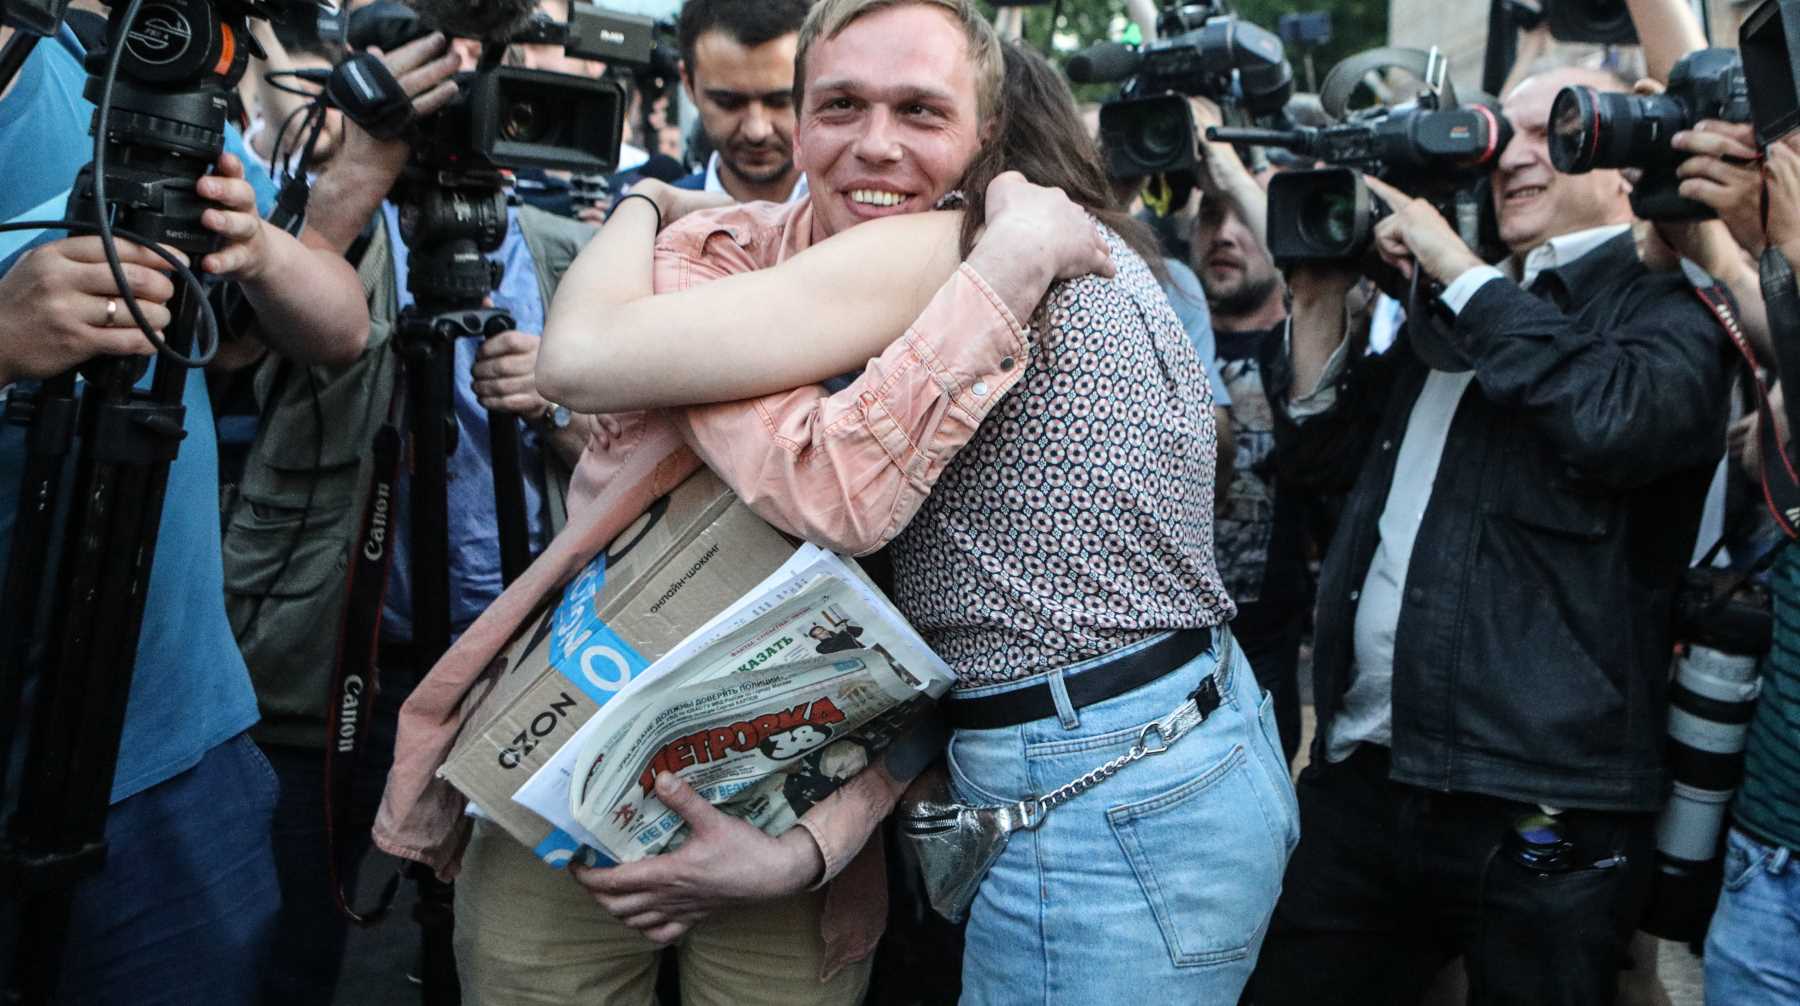 Журналиста задерживали по делу о сбыте наркотиков, позднее выяснилось, что полицейские подбросили ему запрещенные вещества Фото: © Global Look Press / City News Moskva